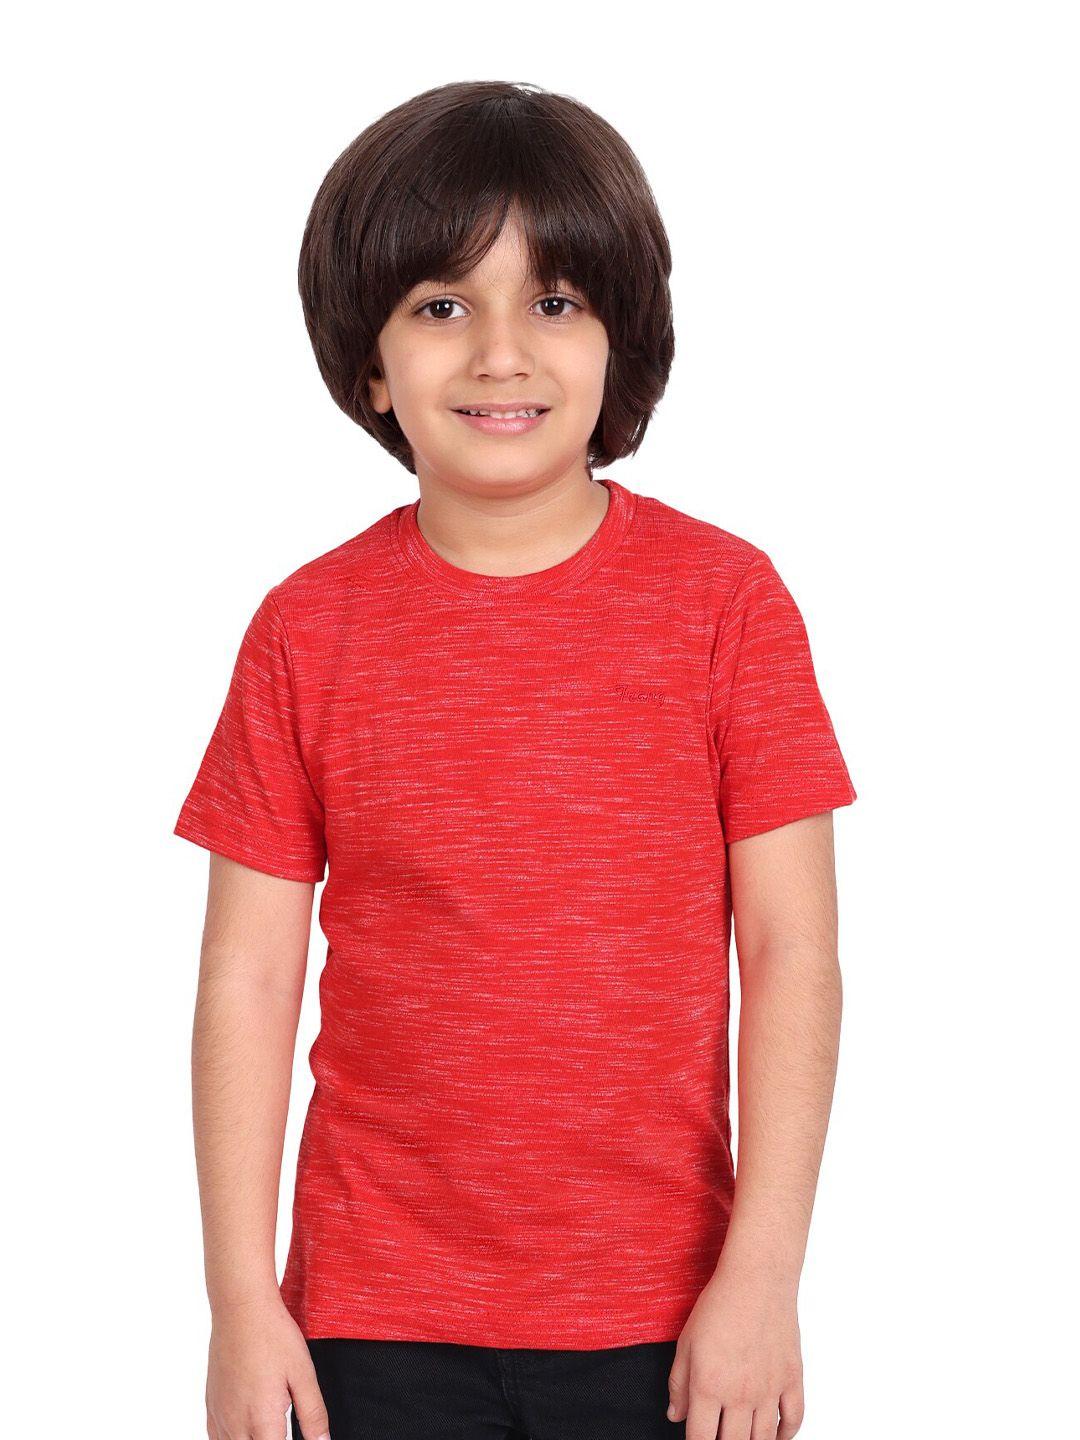 BAESD Boys Red T-shirt